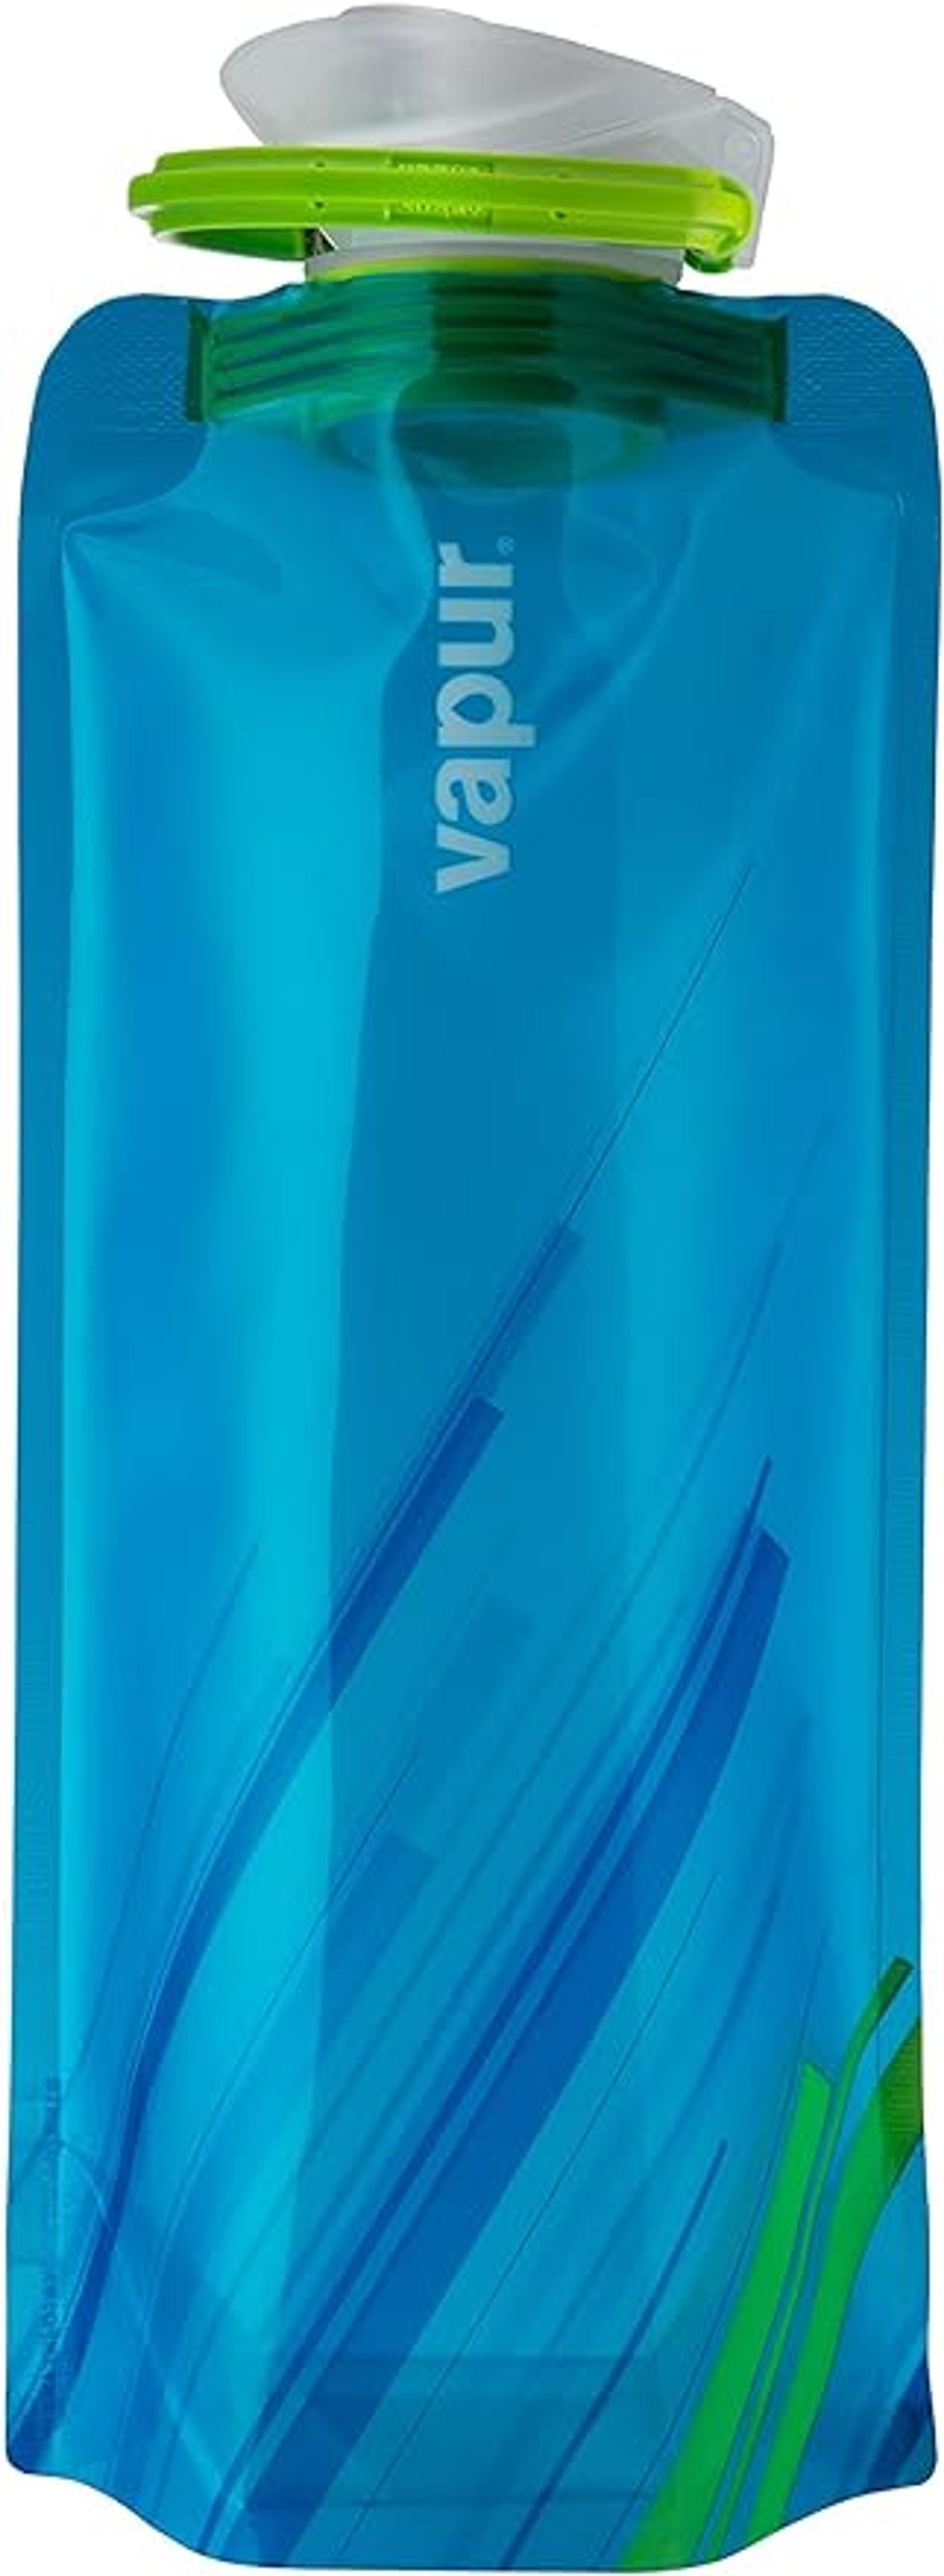 Vapur Element- Bouteille d'eau réutilisable, en Plastique - Bleu, 0,7 Litre : Amazon.fr: Sports et Loisirs